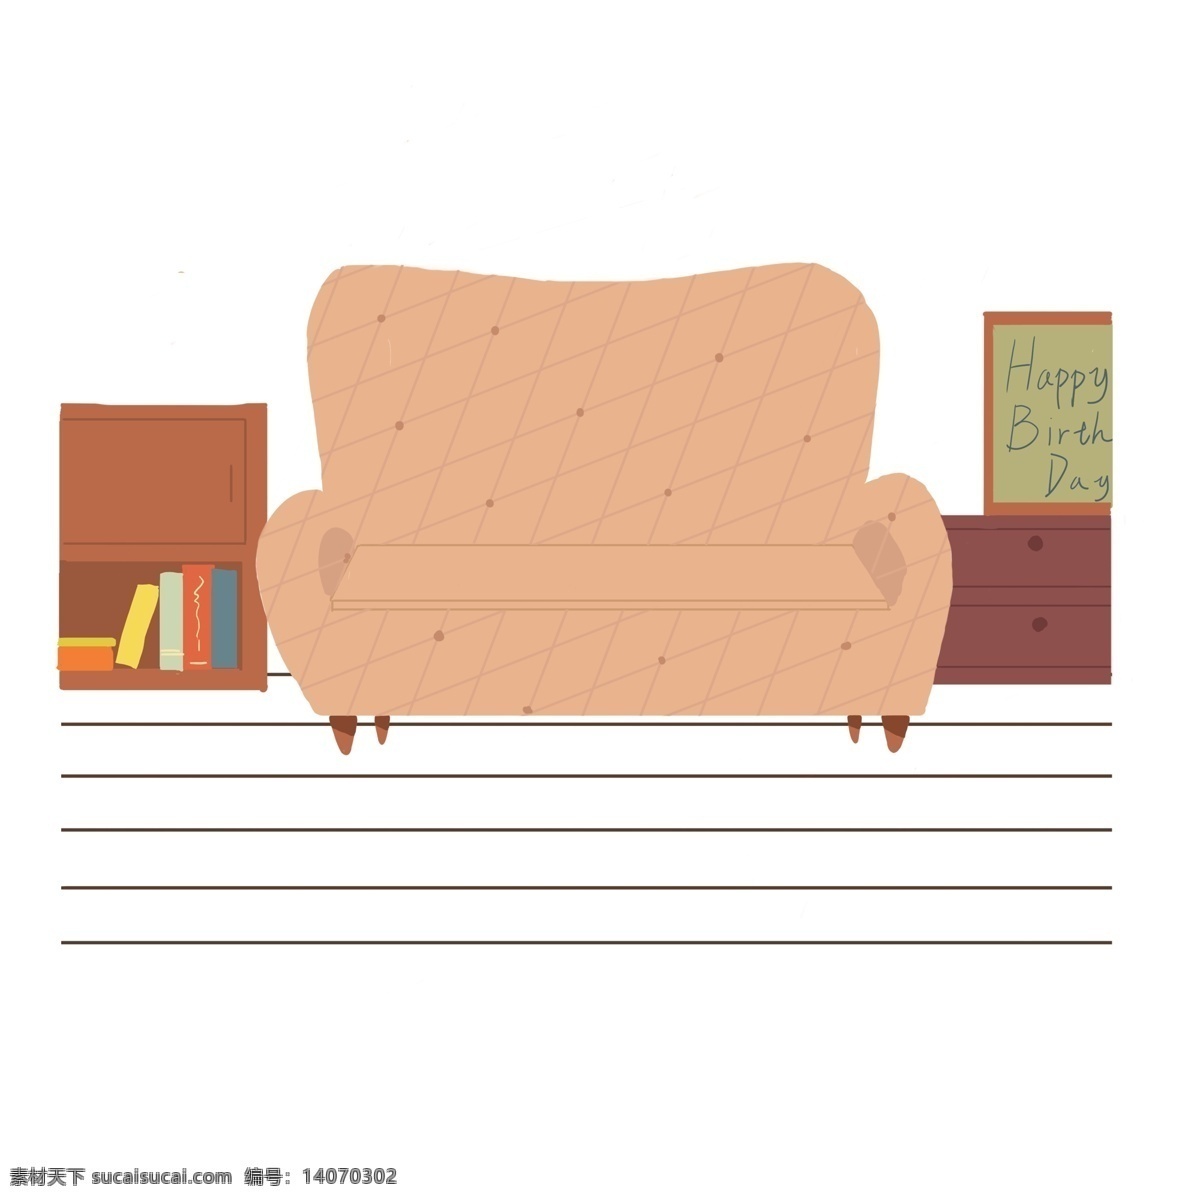 家具 沙发 柜子 组合 书柜 生日快乐牌子 抽屉 书本 书目 插画沙发 单人沙发 浅色沙发